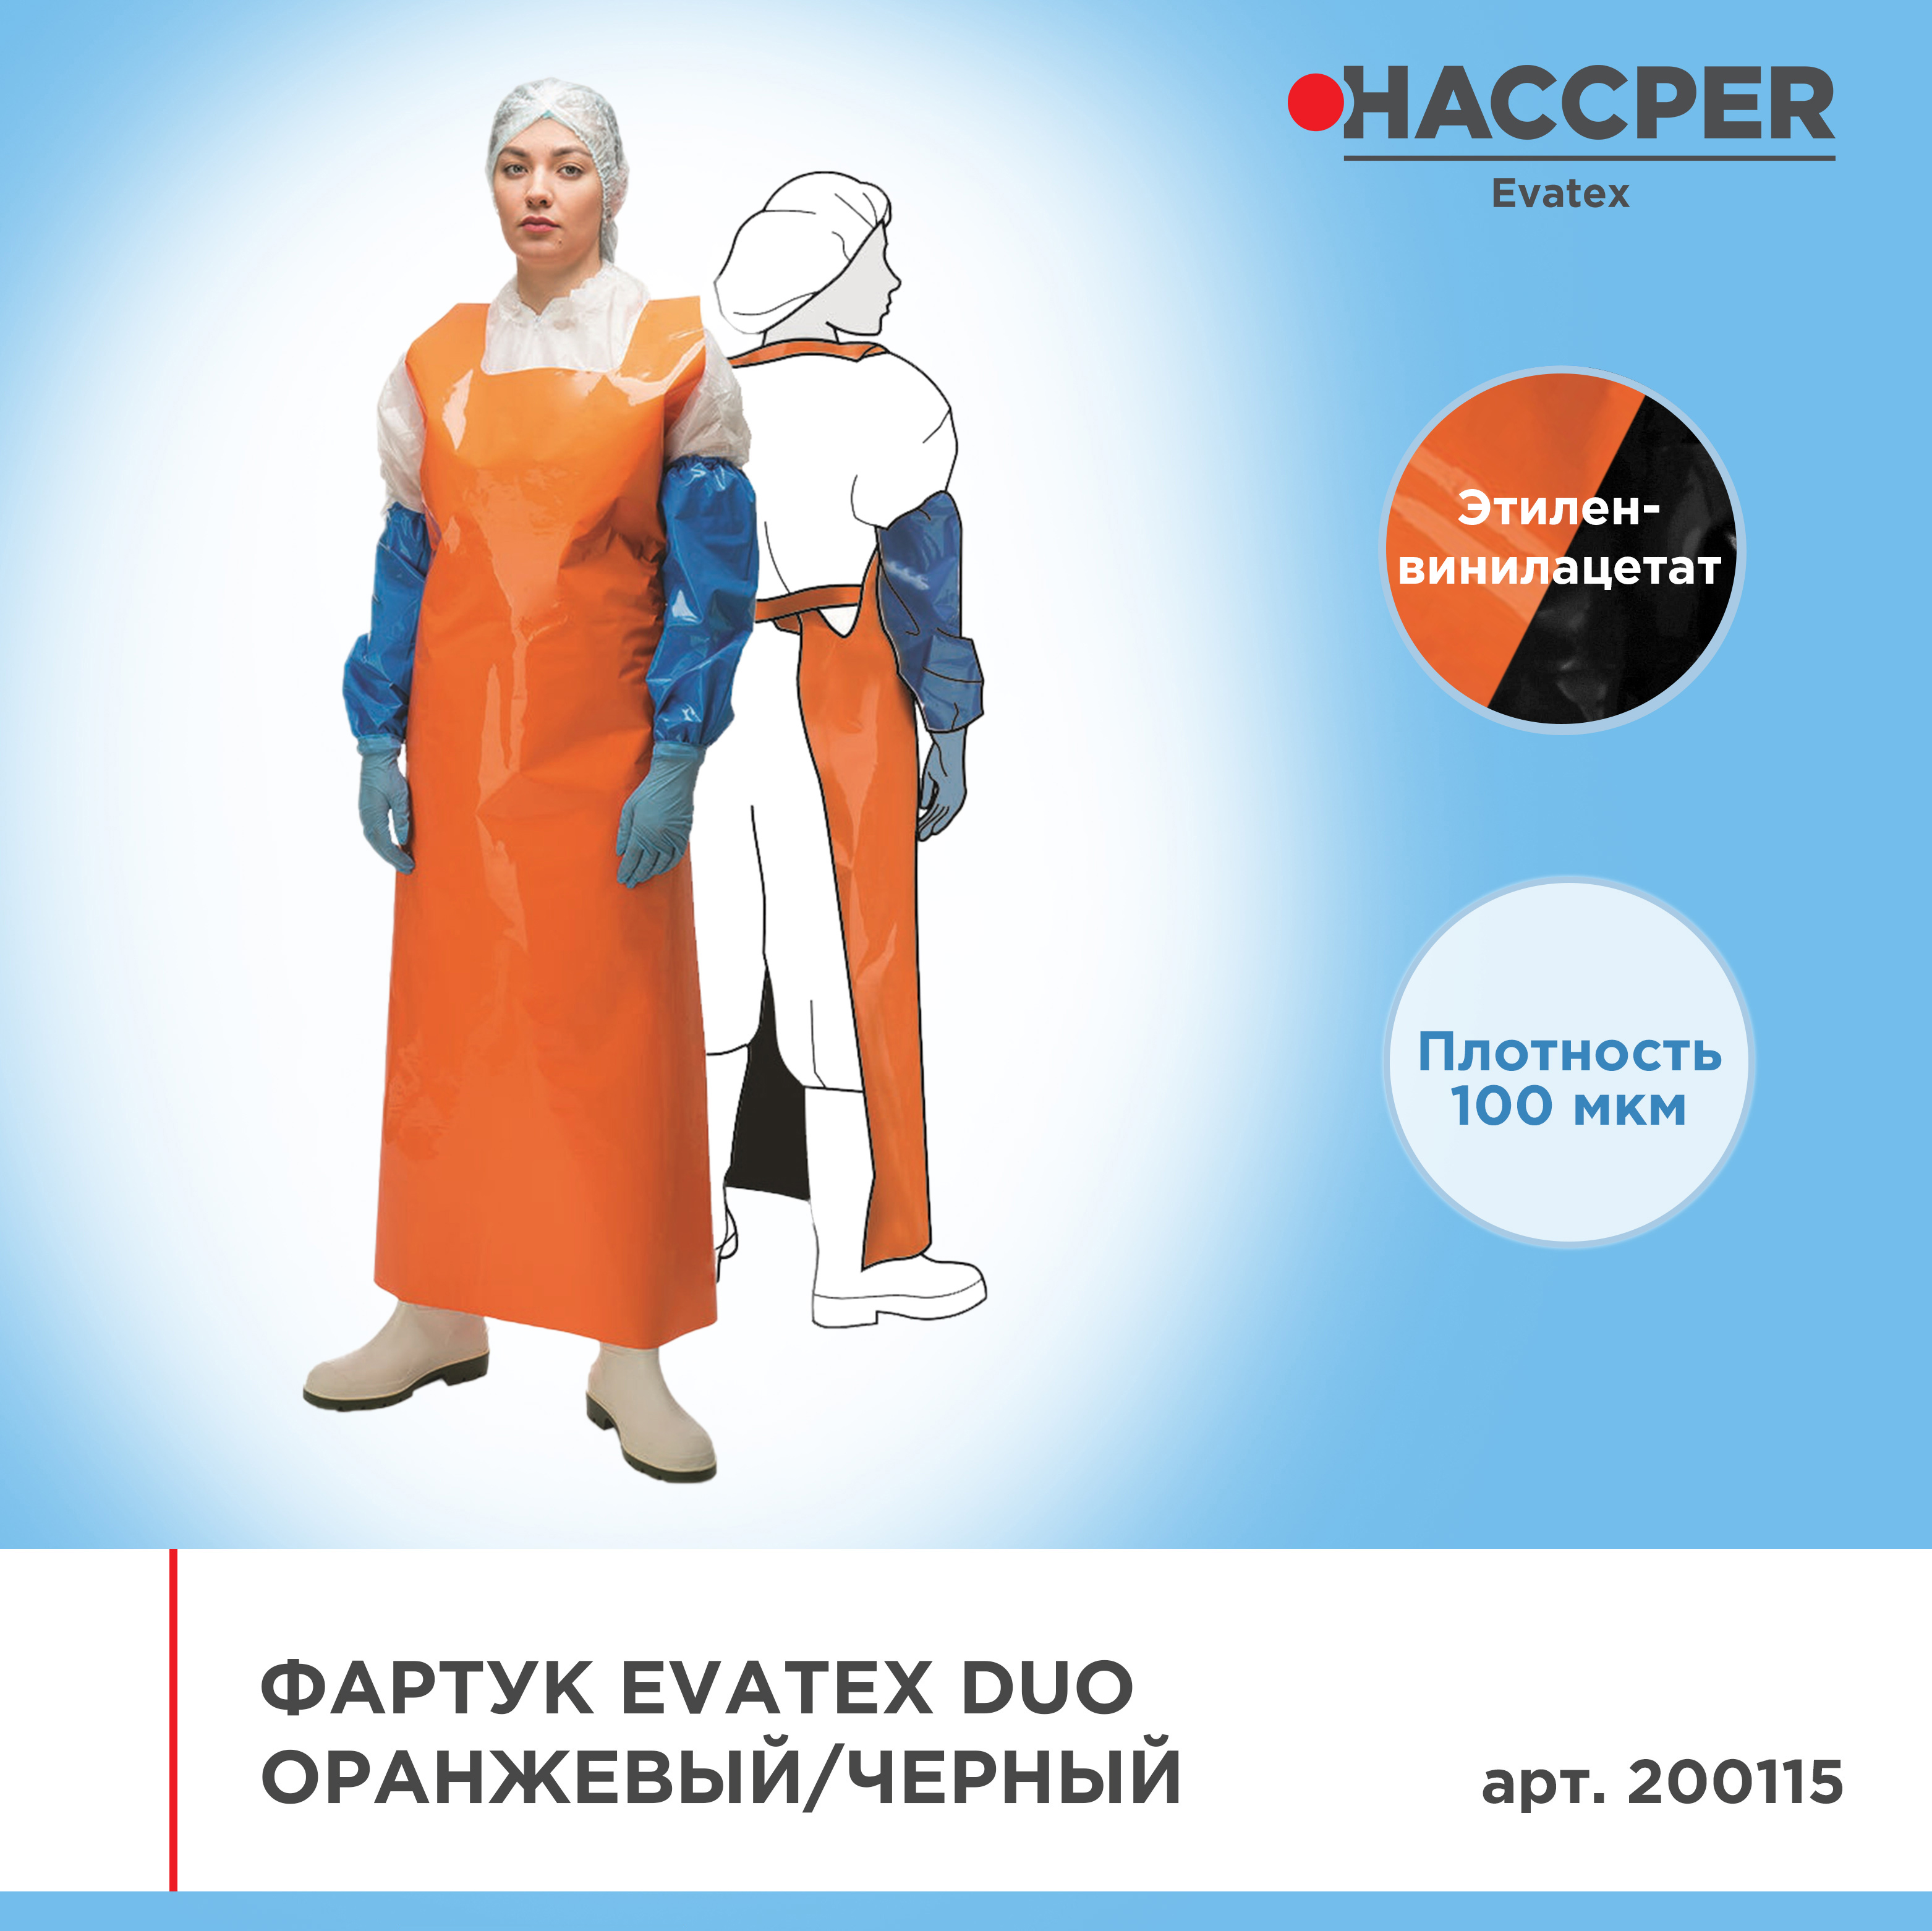 Фартук HACCPER Evatex Duo 1500*830, 100 мкм, оранжевый/черный